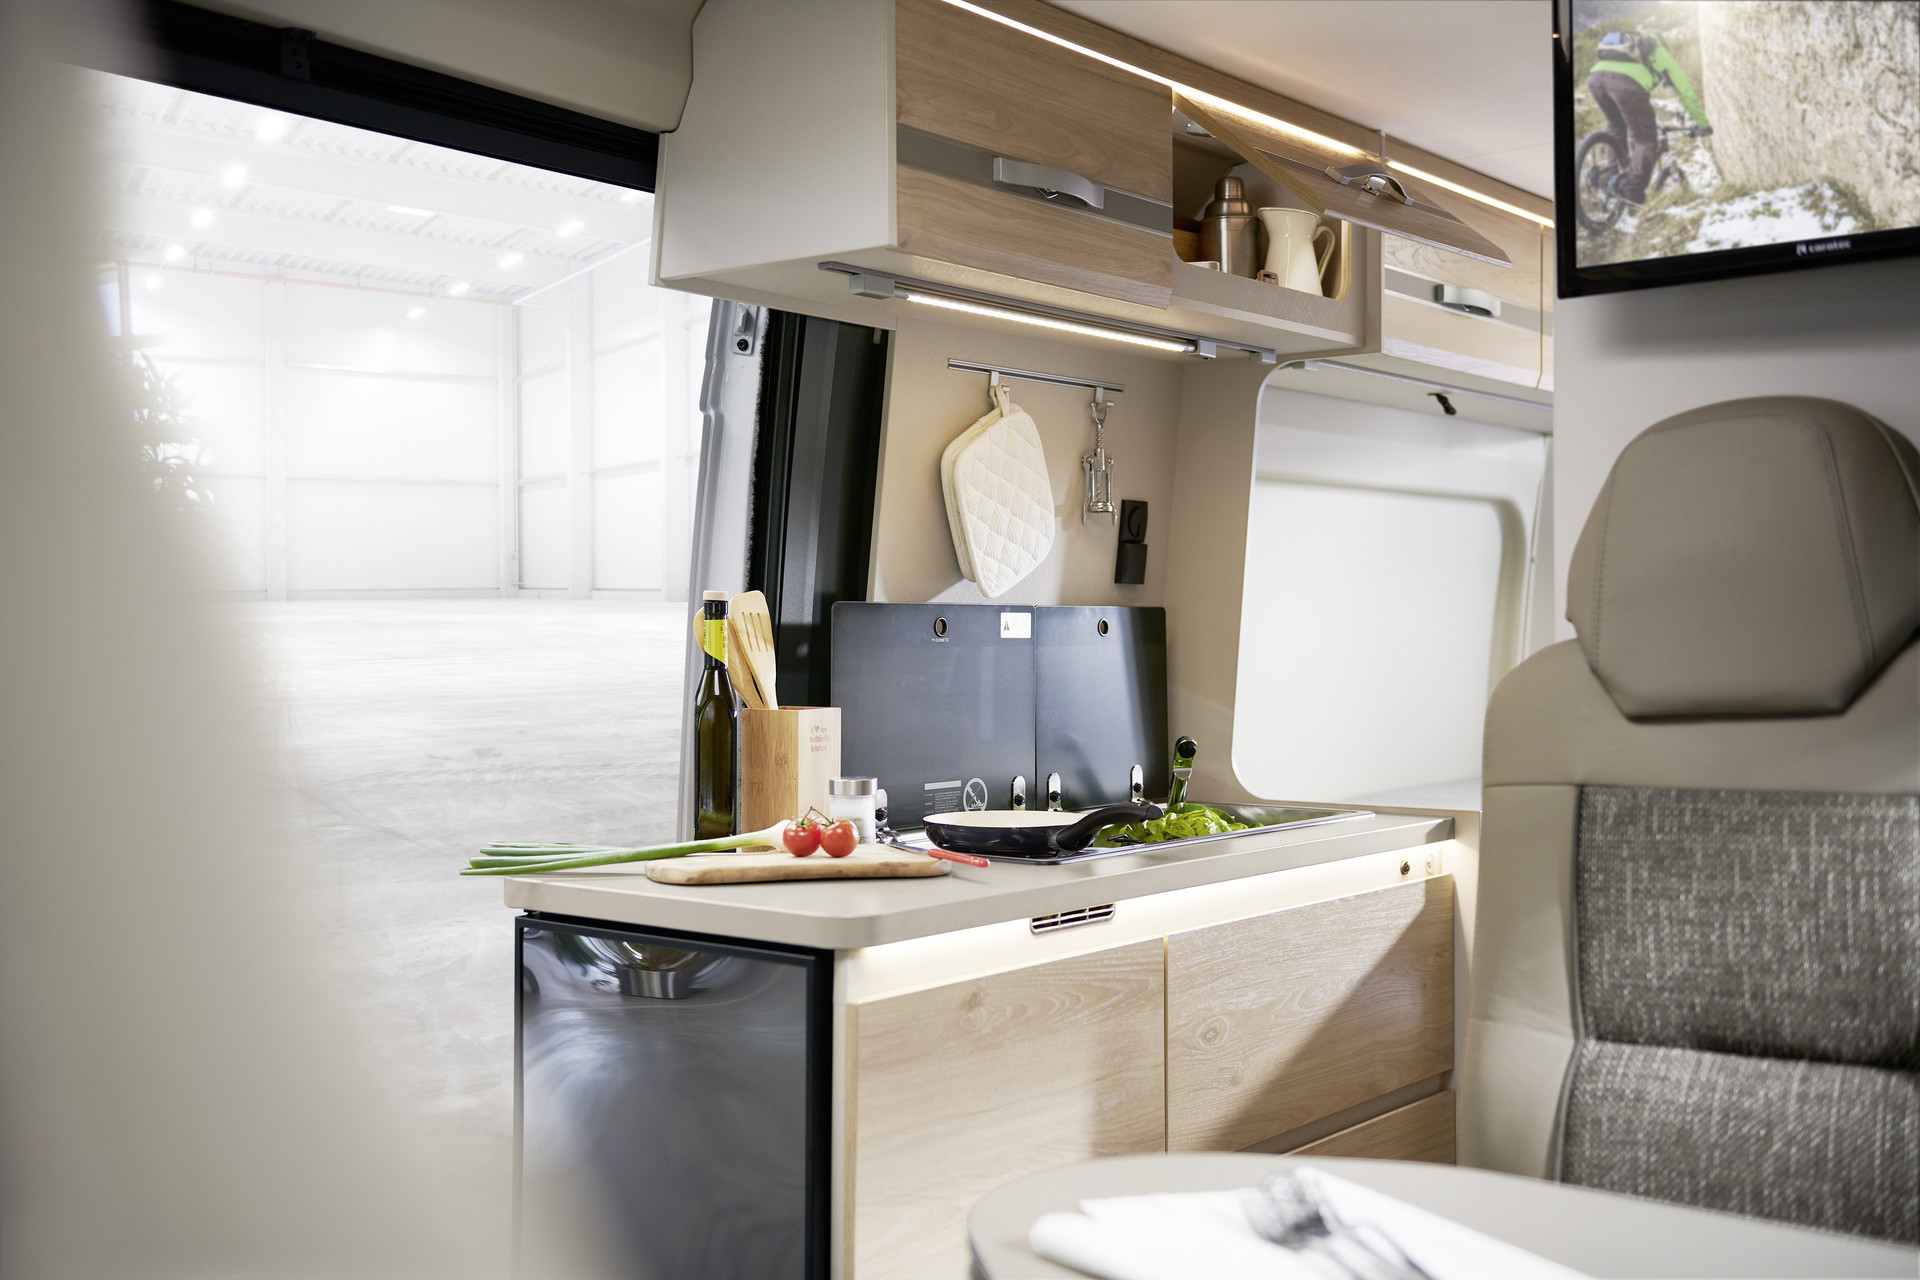 Cozinhar (quase) como em casa. Utilização ideal do espaço e das superfícies. O frigorífico de grande dimensão é facilmente acessível por fora e por dentro, através de uma porta com um ângulo de abertura de 180°.